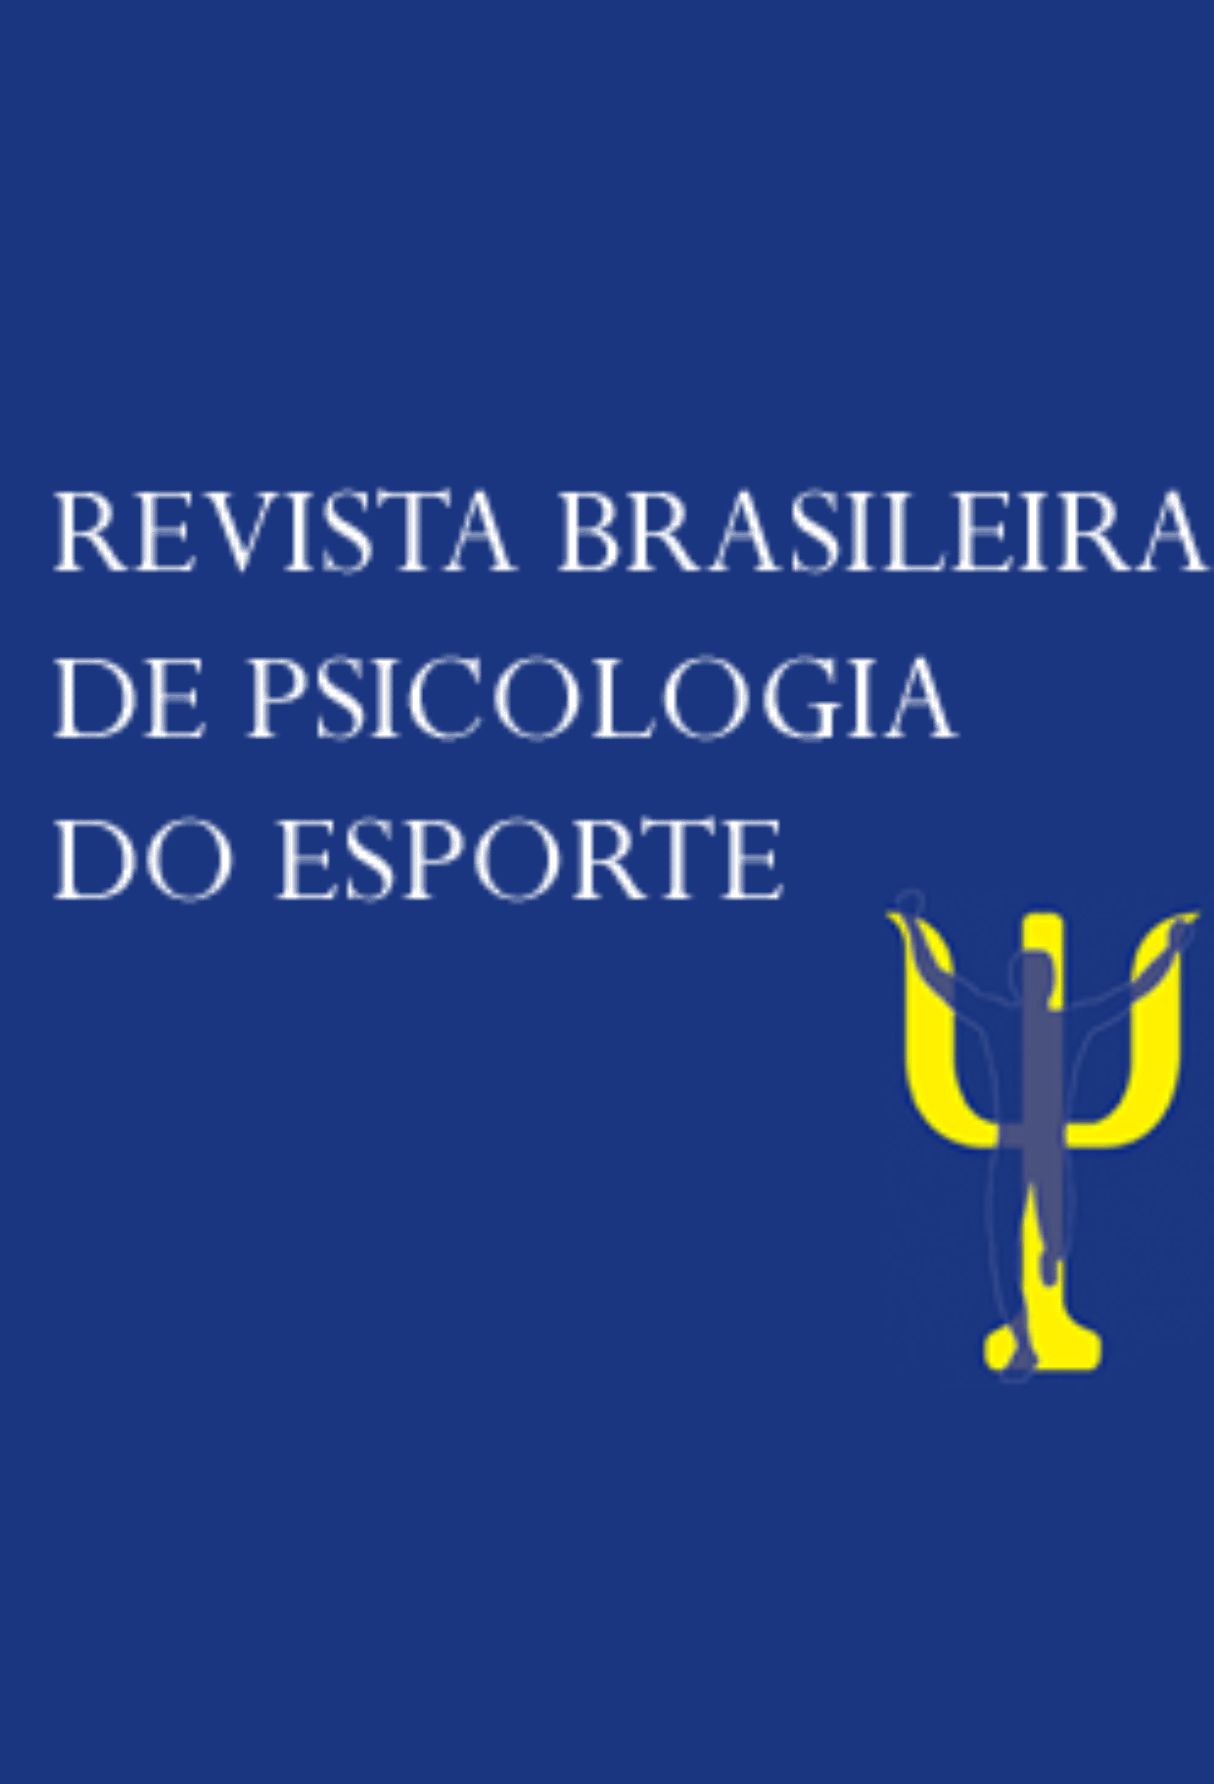 Capa: Revista Brasileira de Psicologia do Esporte